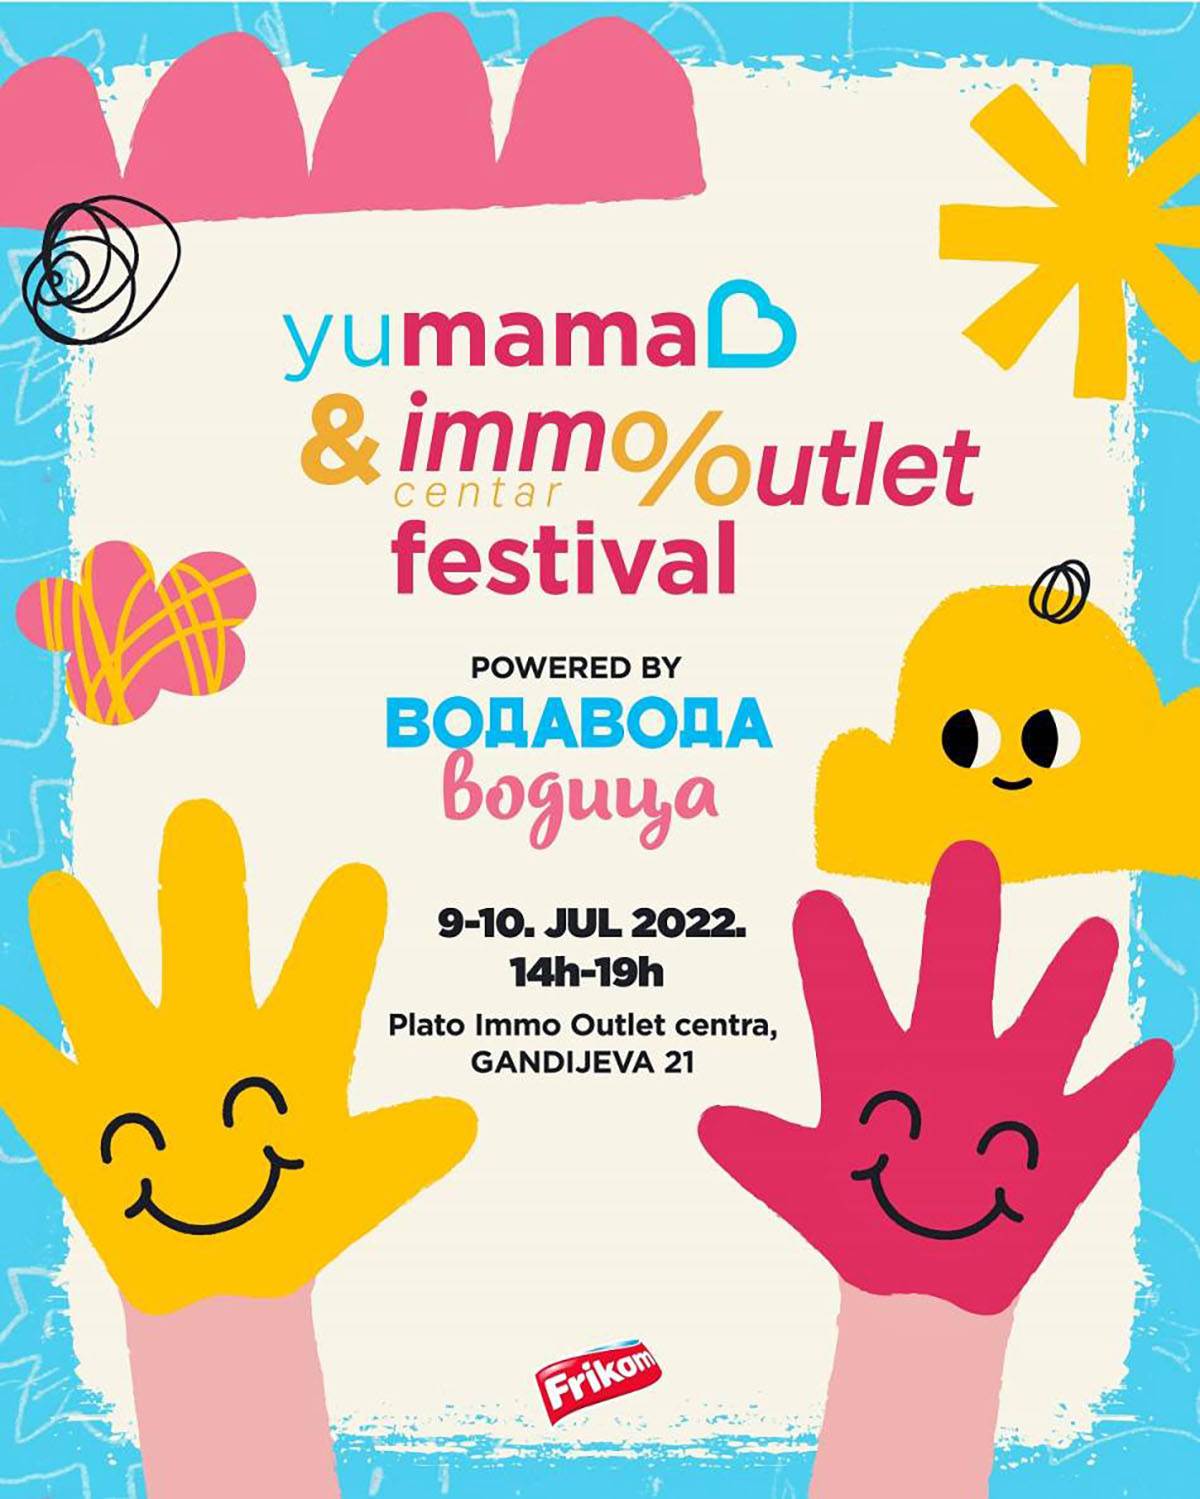  Yu mama festival  